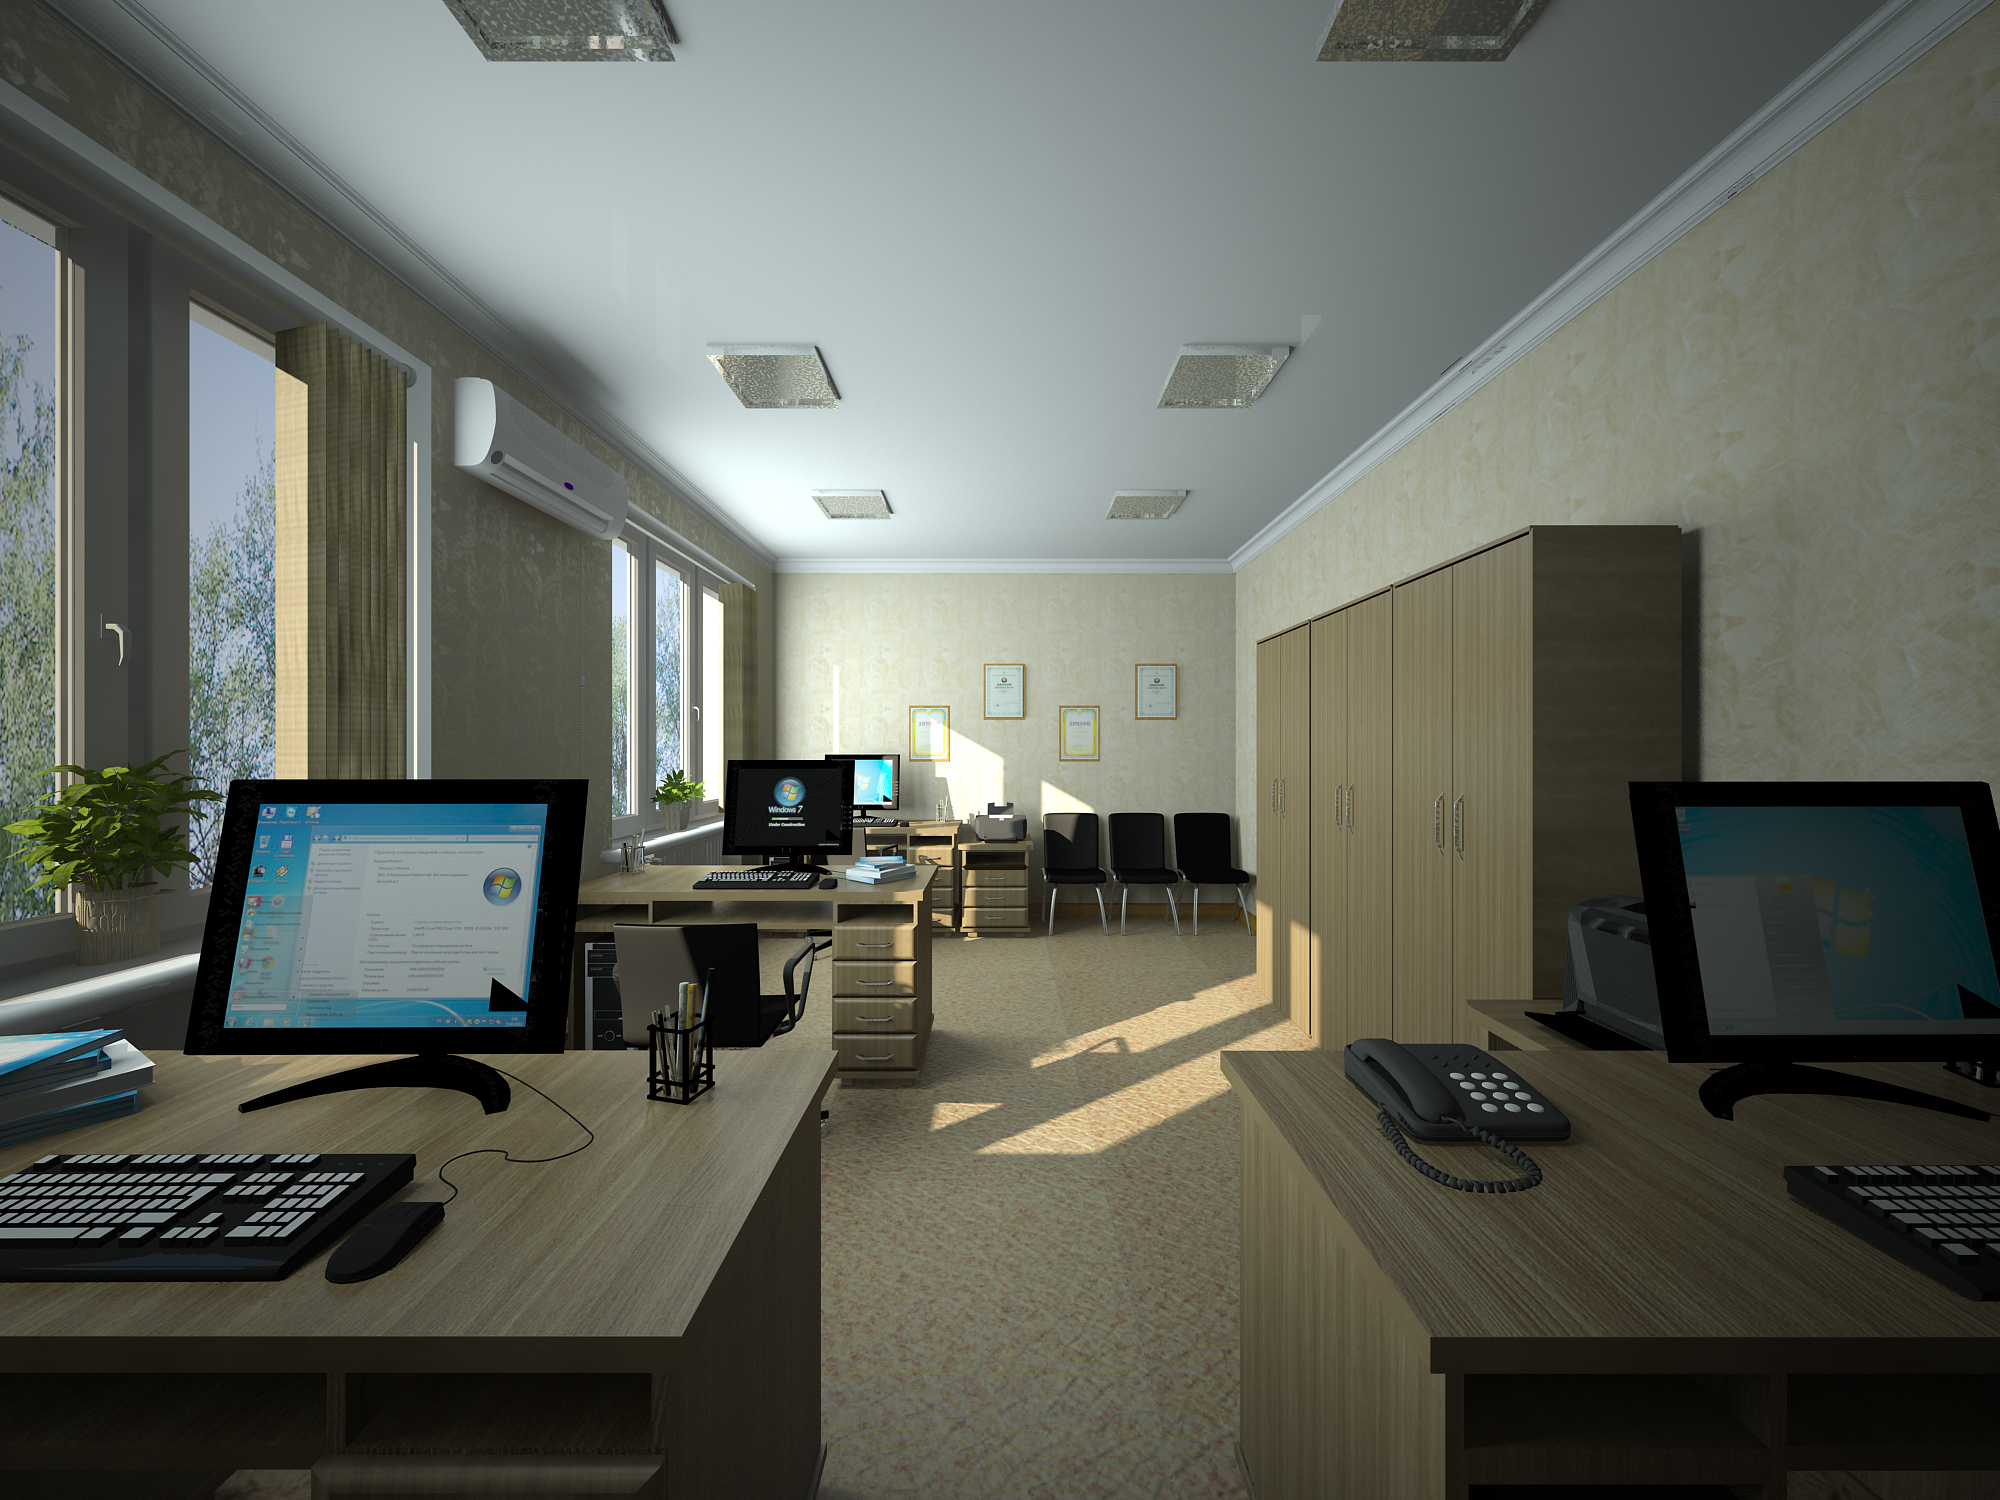 office of Slavyansk in 3d max vray 3.0 image